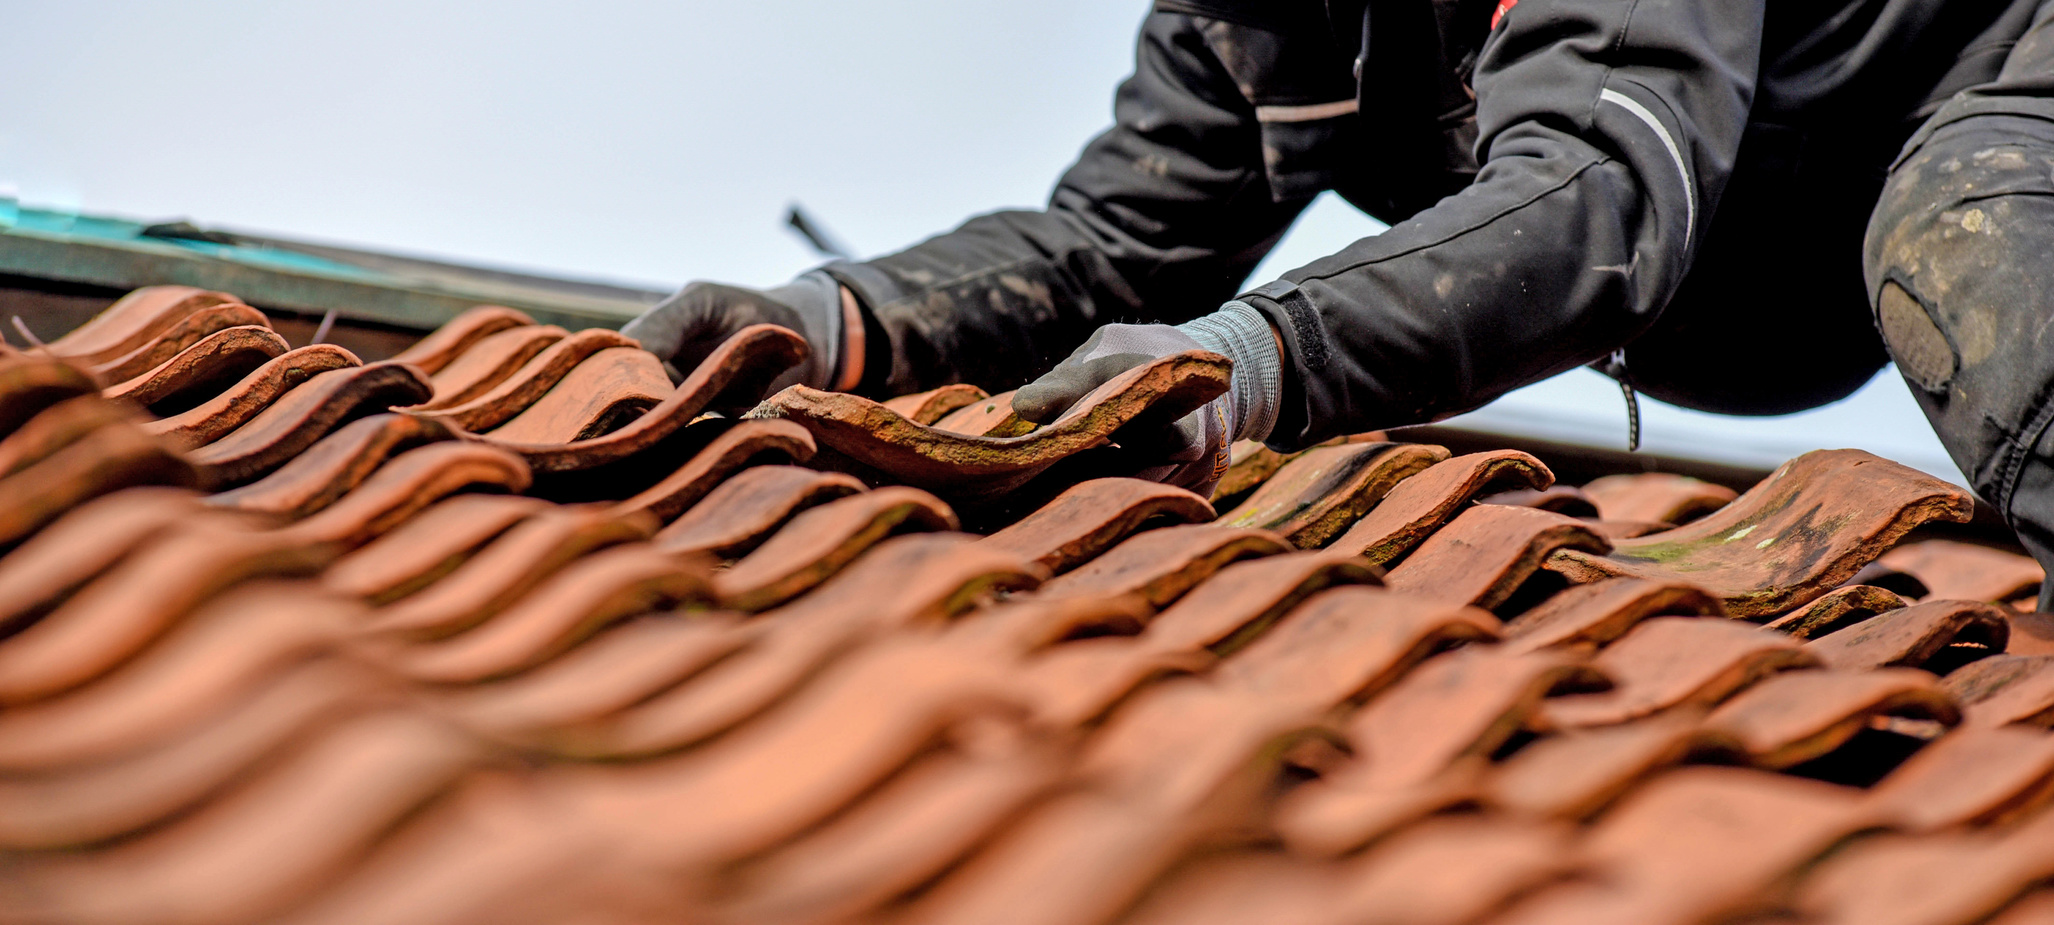 Ein Handwerker entfernt einen defekten Dachziegel.